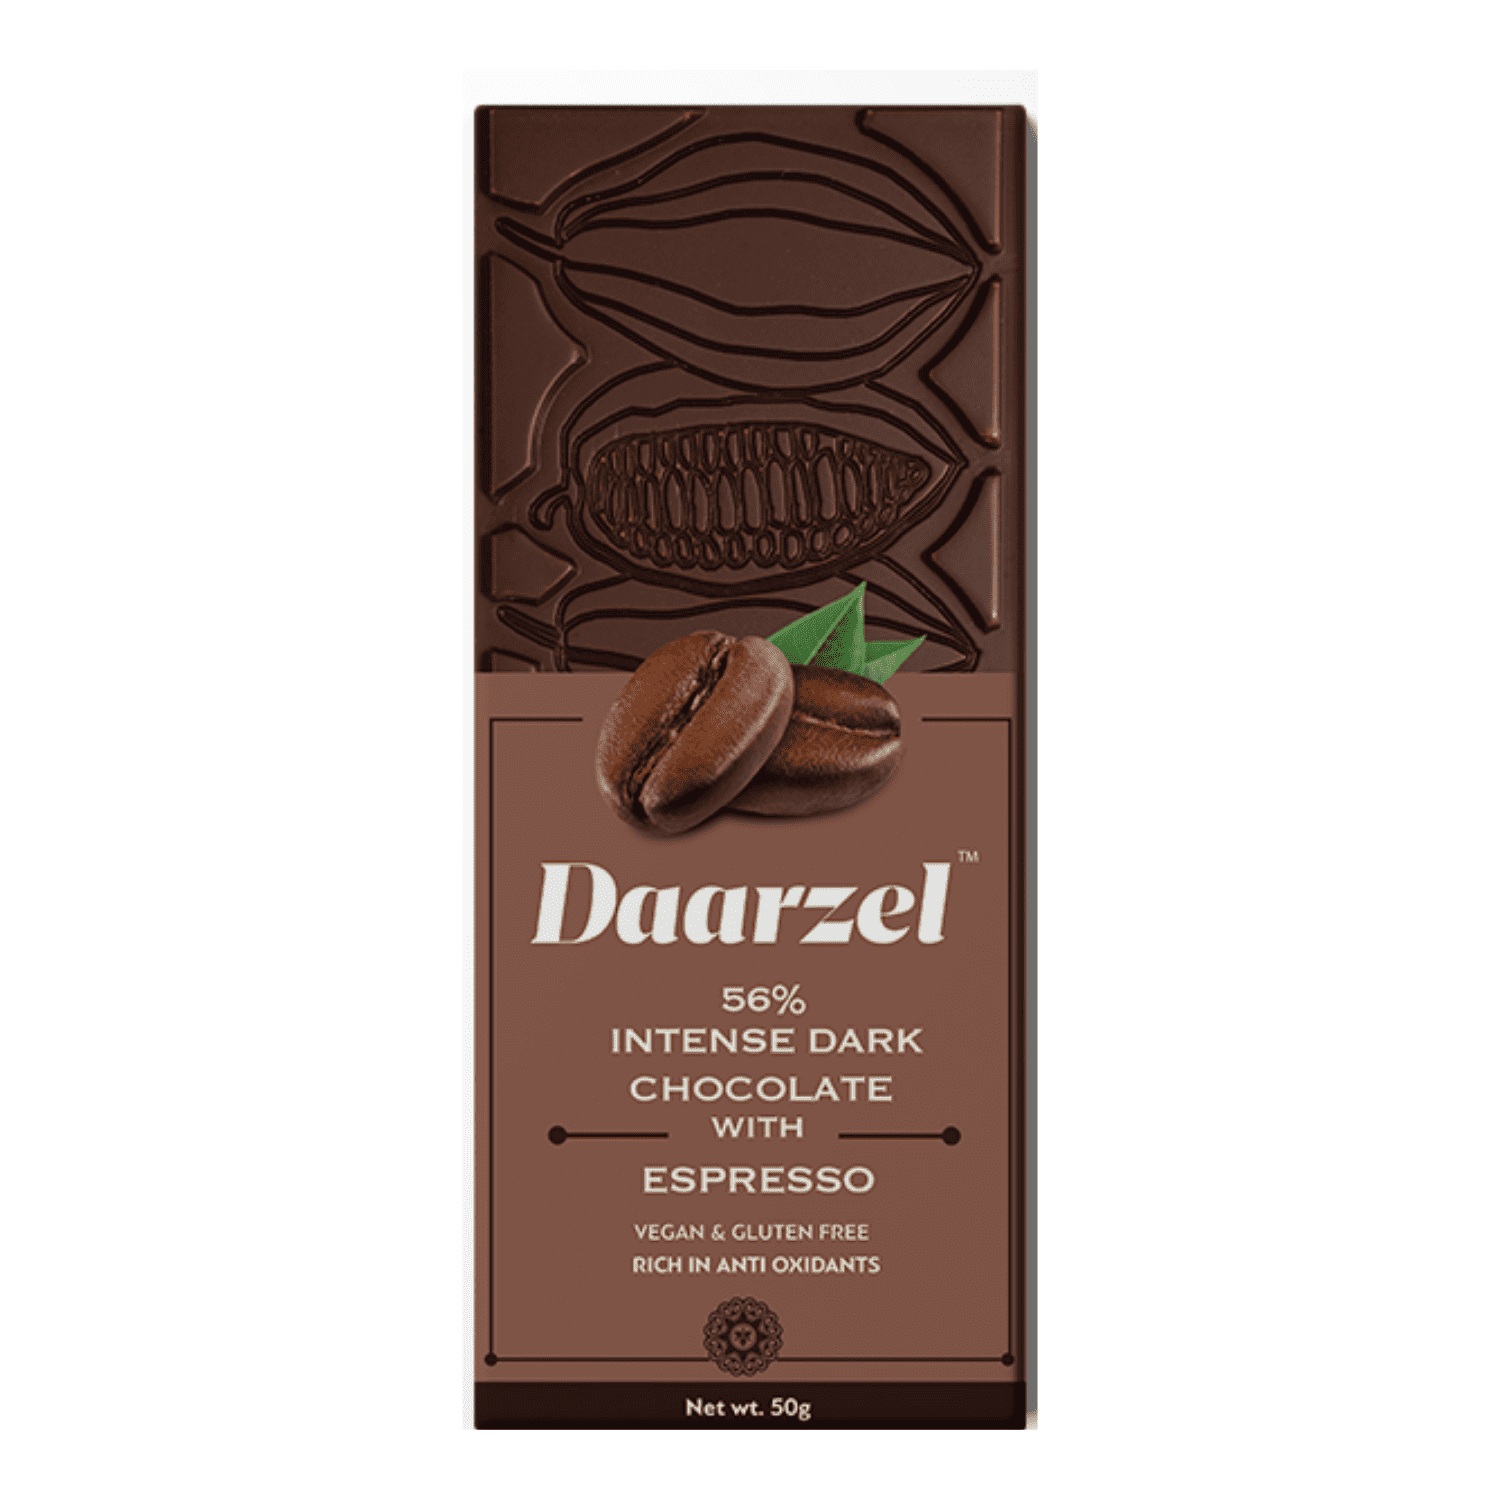 Daarzel  56 Intense Dark Chocolate with Espresso  Vegan & Gluten Free  50 g